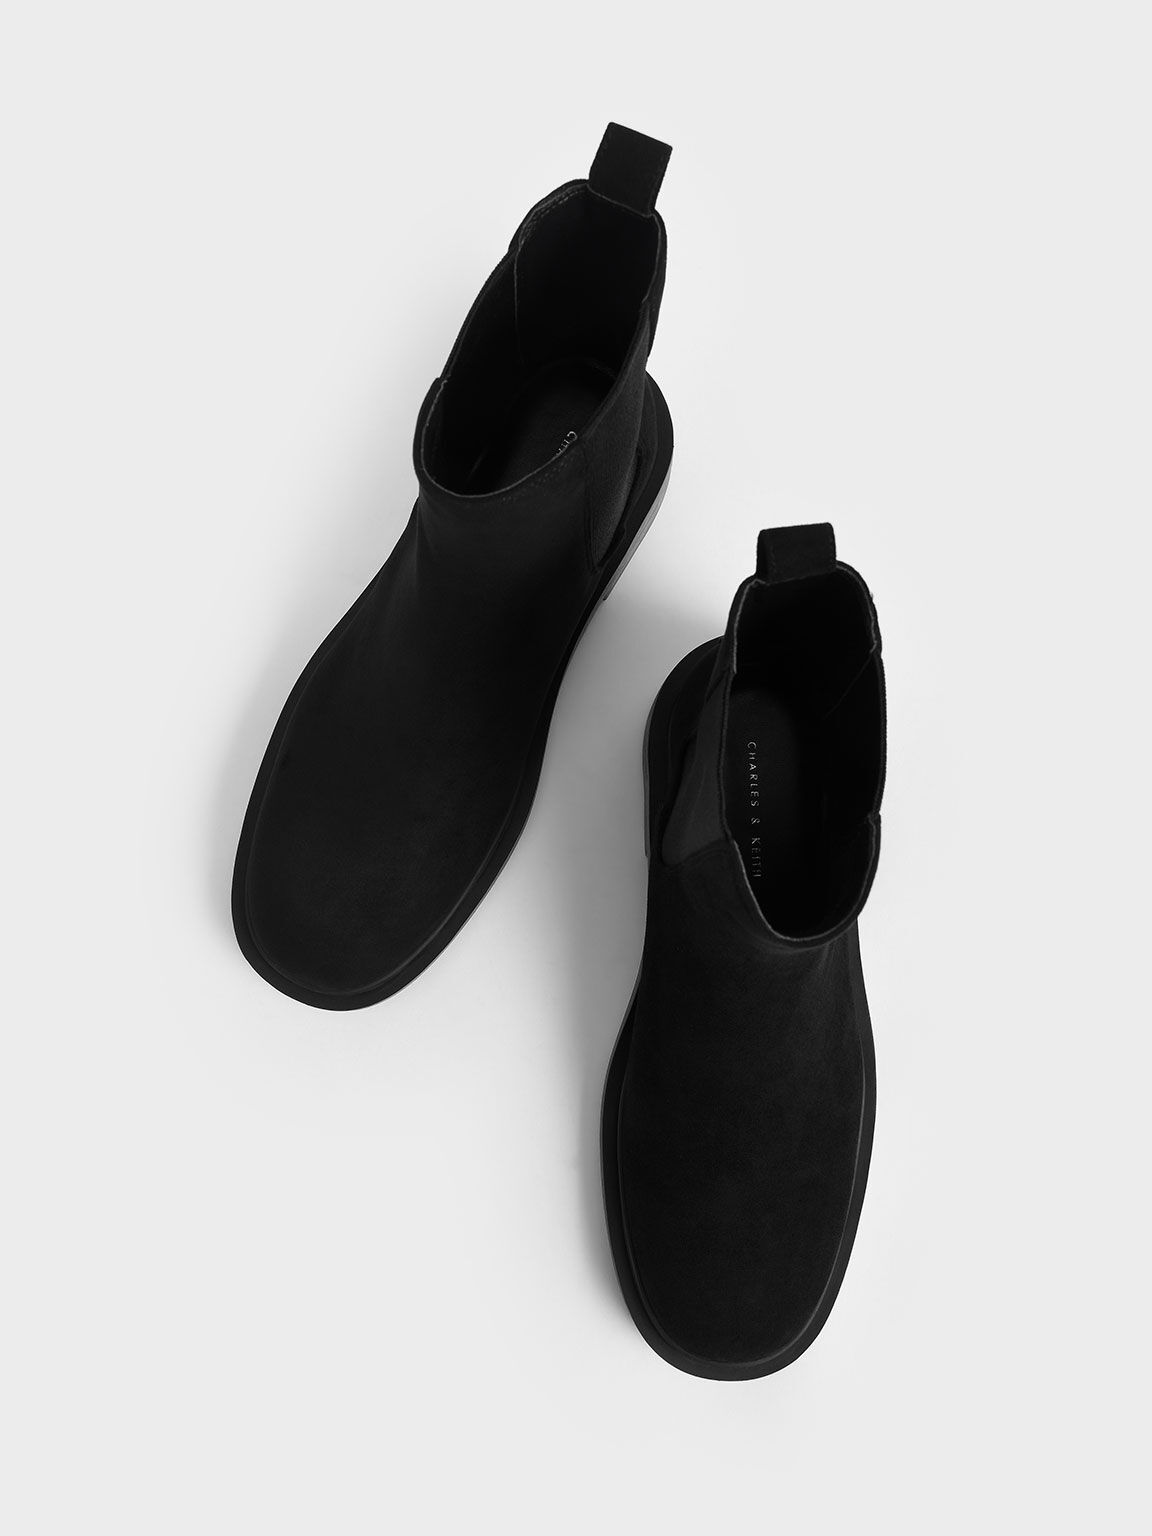 Textured Chelsea Block-Heel Boots, Black Textured, hi-res